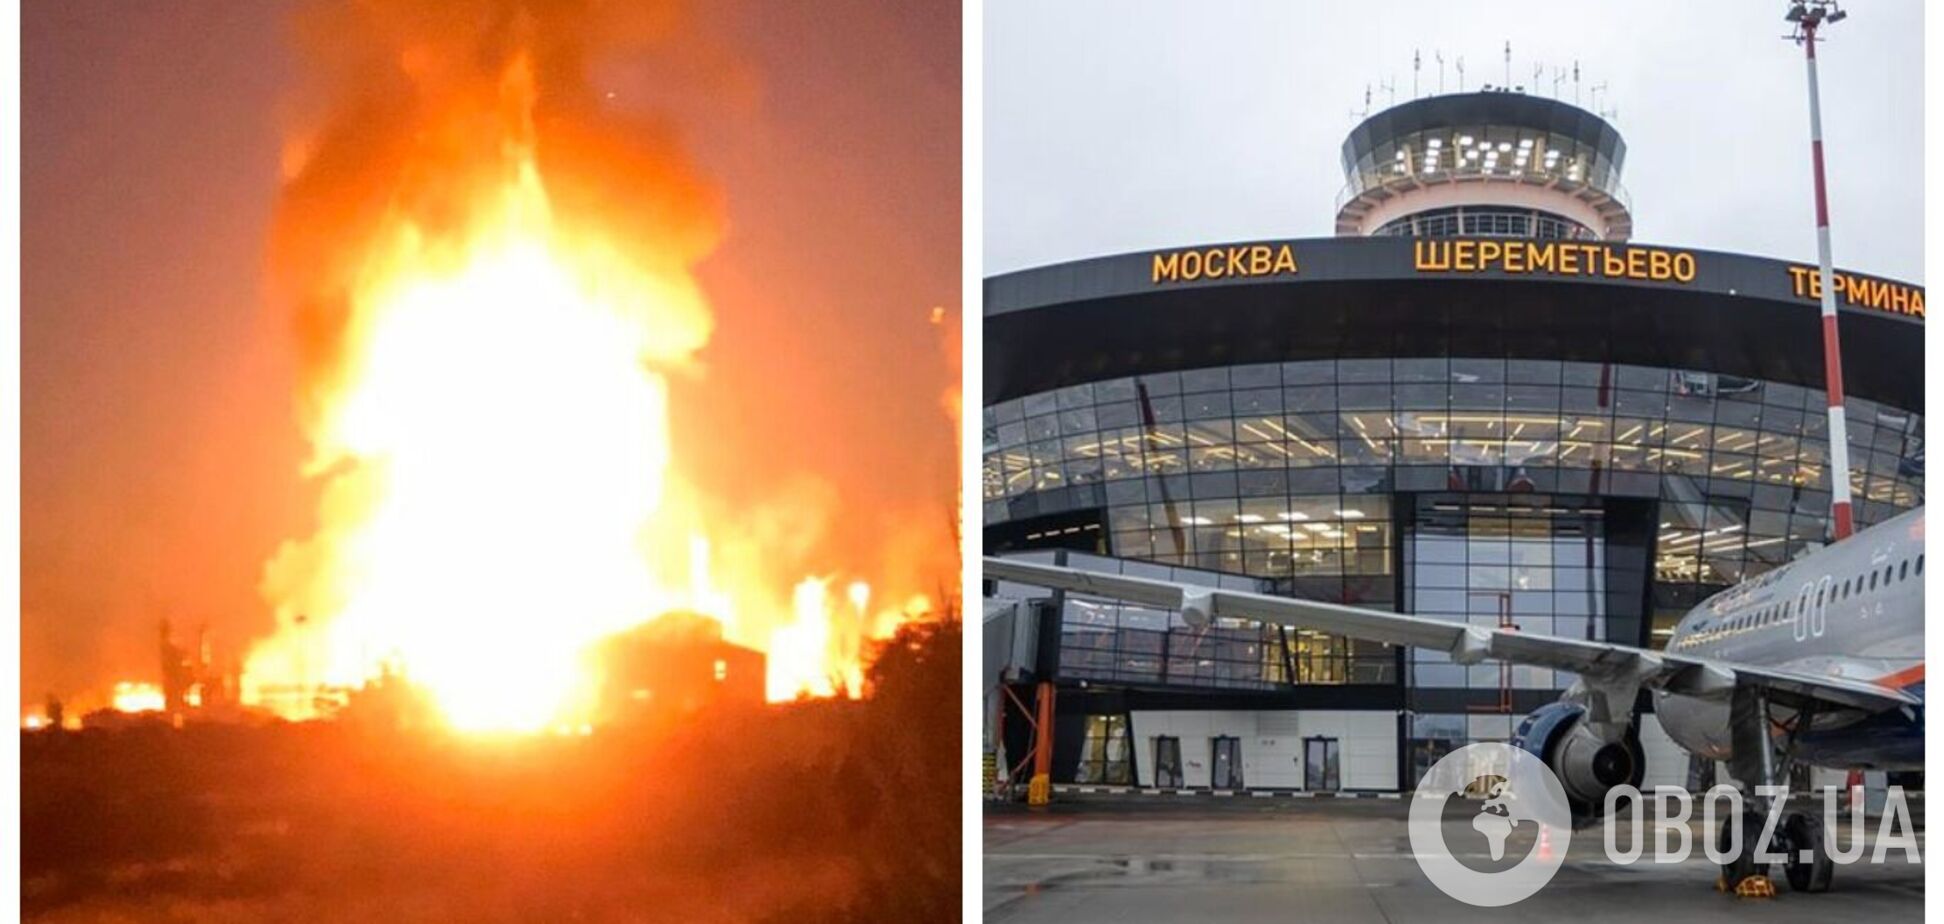 Біля аеропорту 'Шереметьєво' в Москві прогримів вибух на заправці, вогонь охопив авто: піднявся стовп диму. Відео